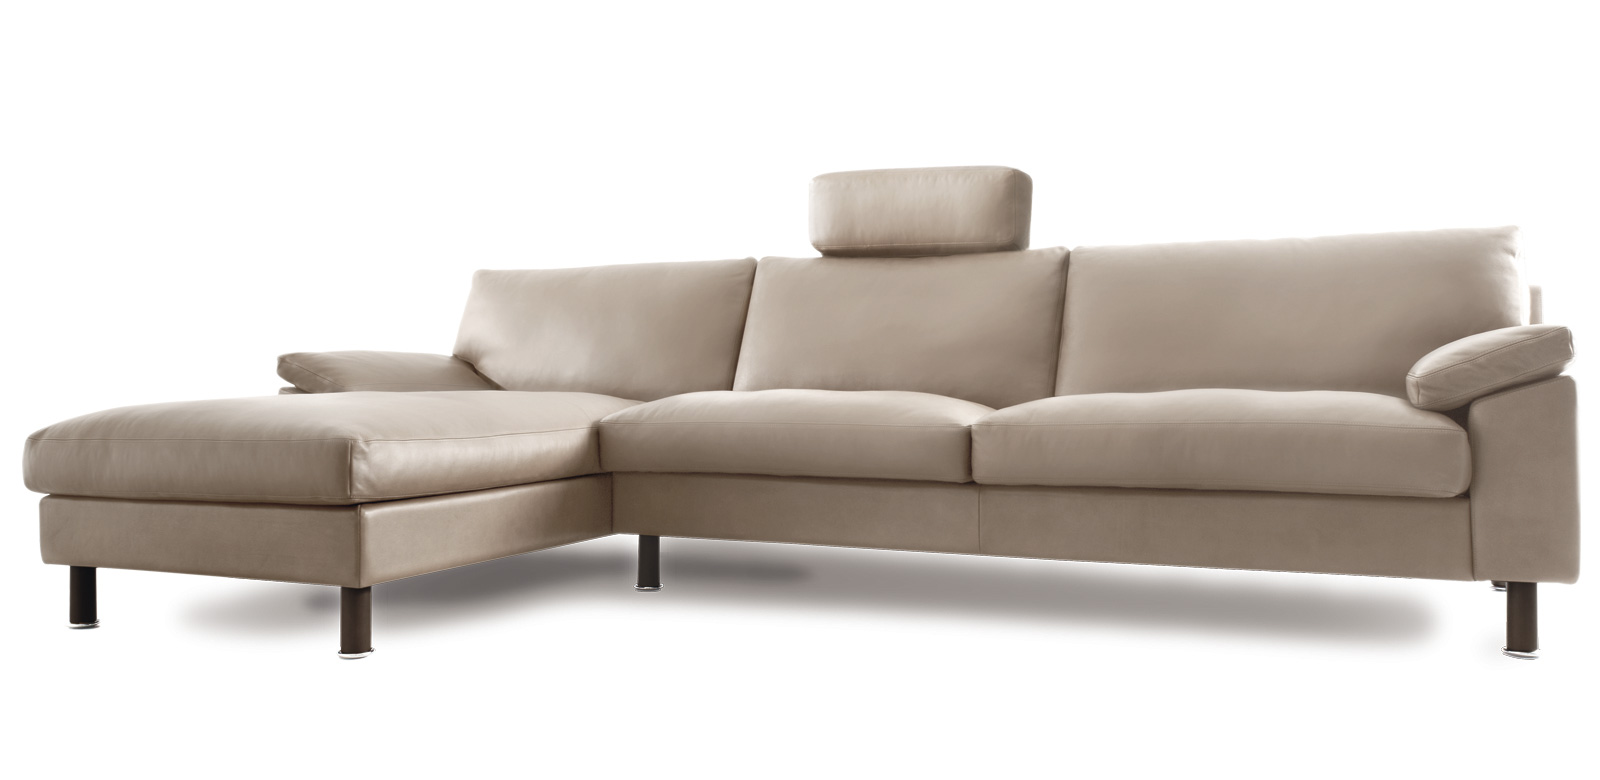 CL650 Longchair Sofa in beige-wit leer met centrale hoofdsteun